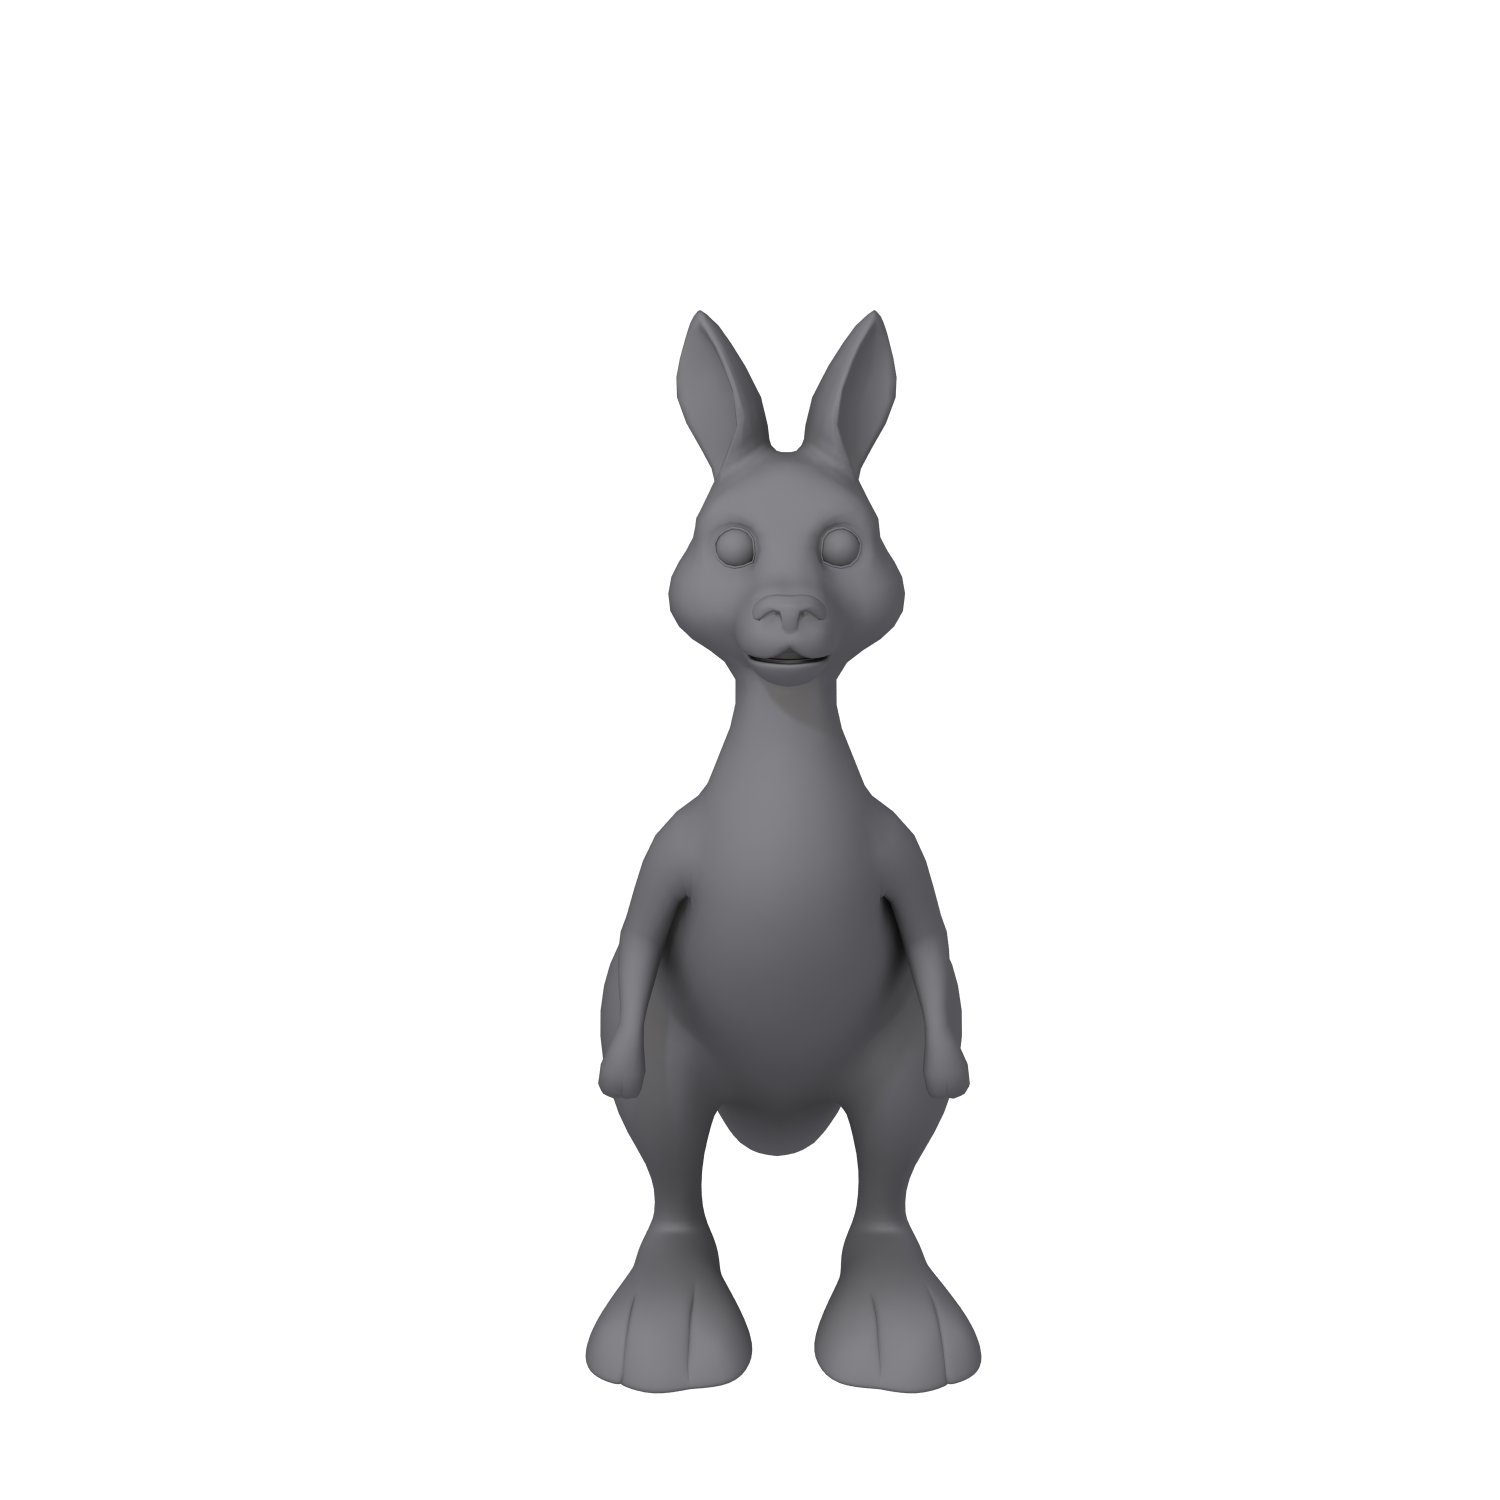 Peter Rabbit Figurine 3D Model $39 - .obj .fbx .max - Free3D